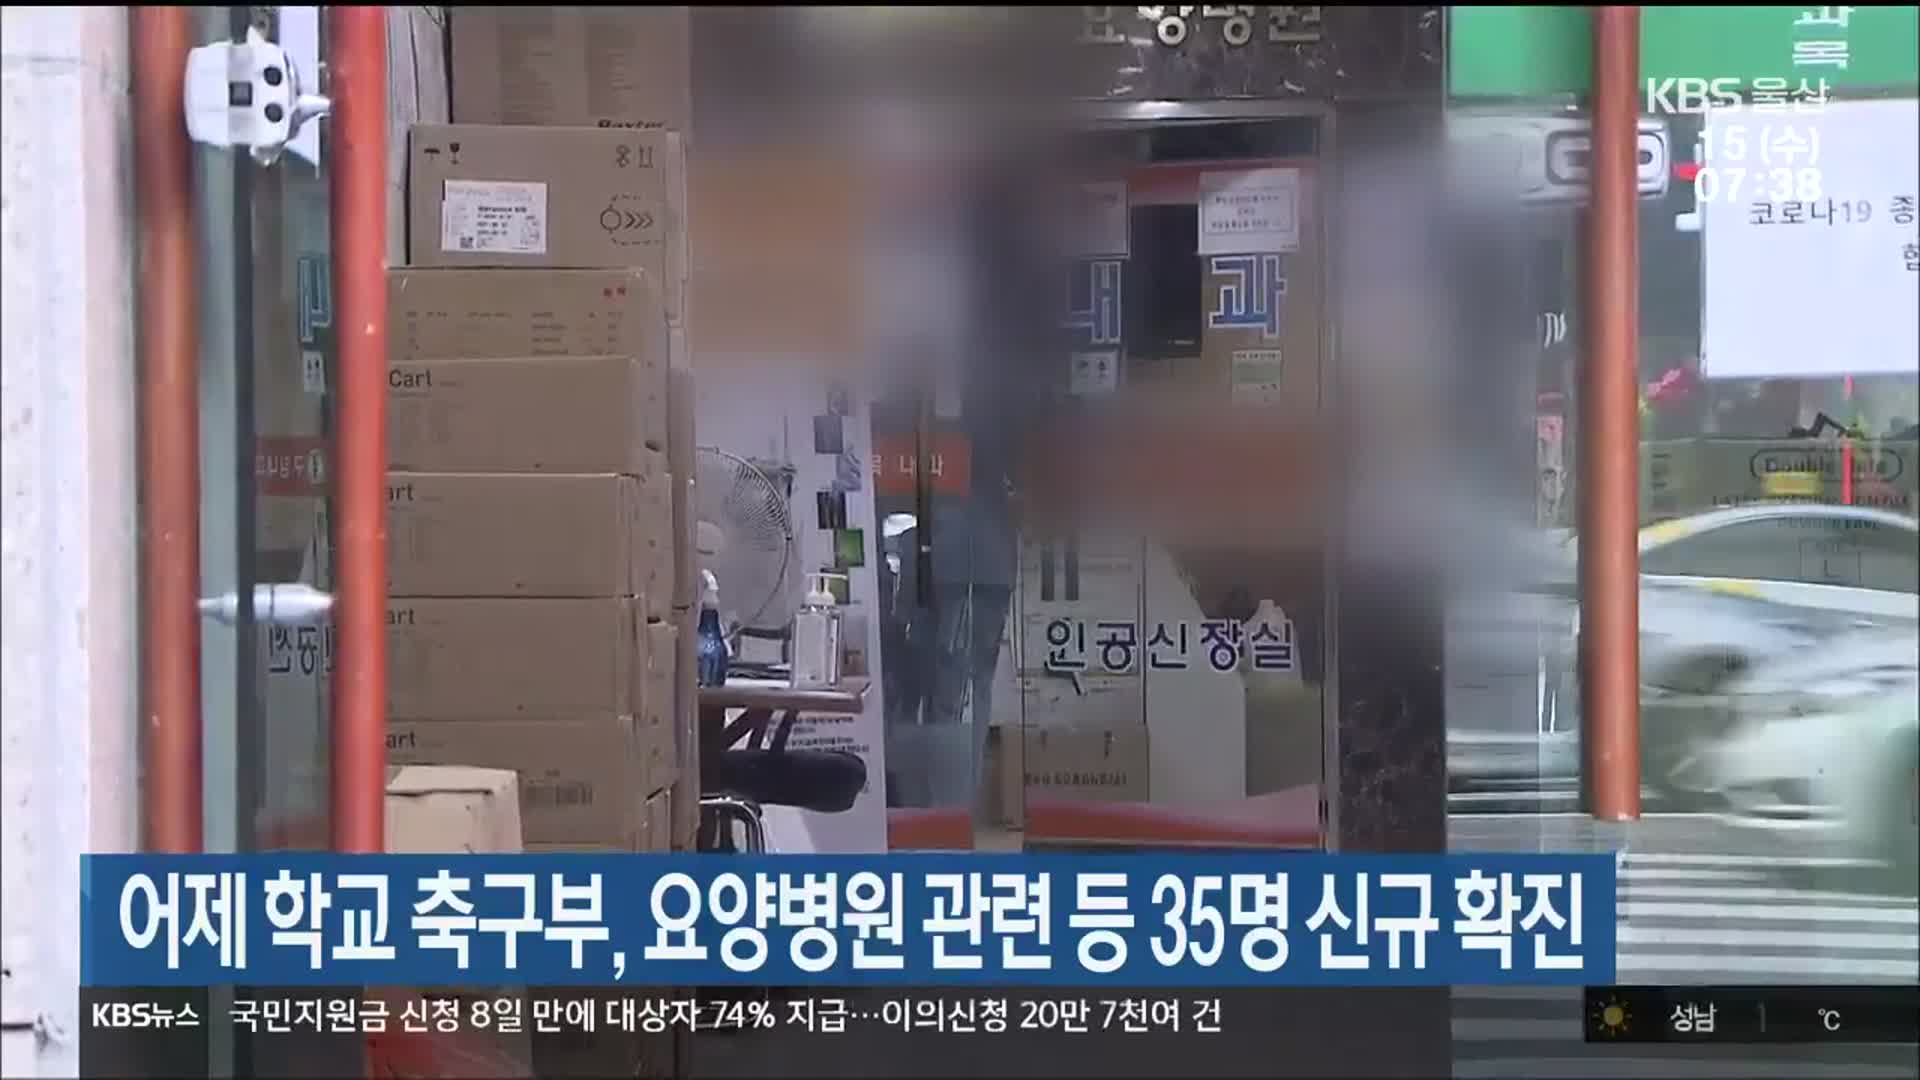 어제 학교 축구부·요양병원 관련 등 울산 35명 신규 확진